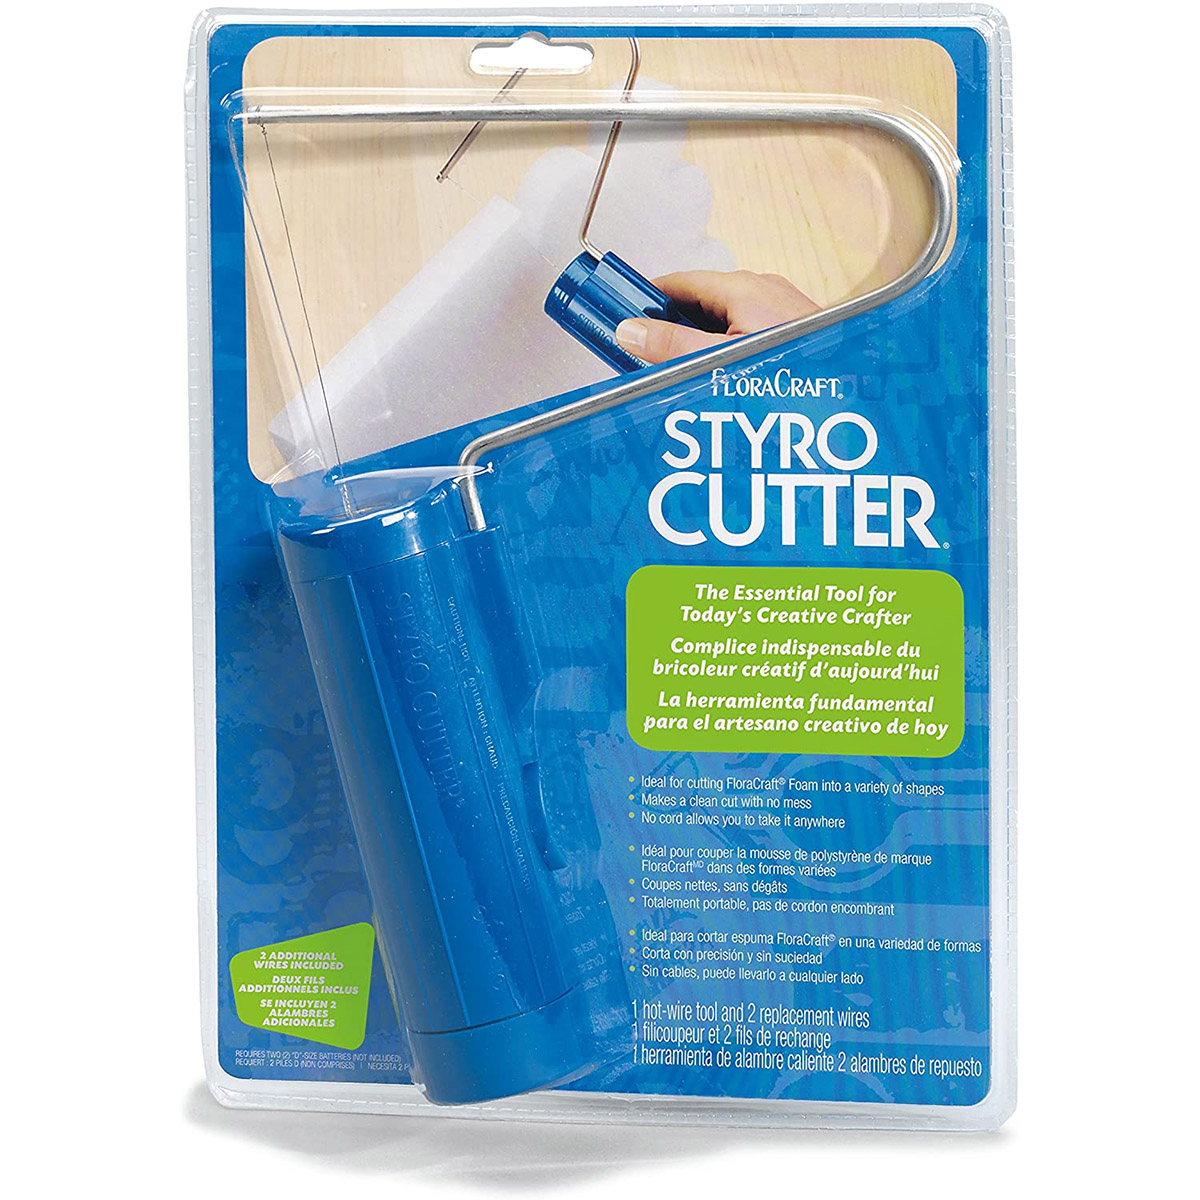 Styro Cutter Electric Hot Foam Cutters Craft Cut Cuts Upto 4 Thickn  Styrofoam